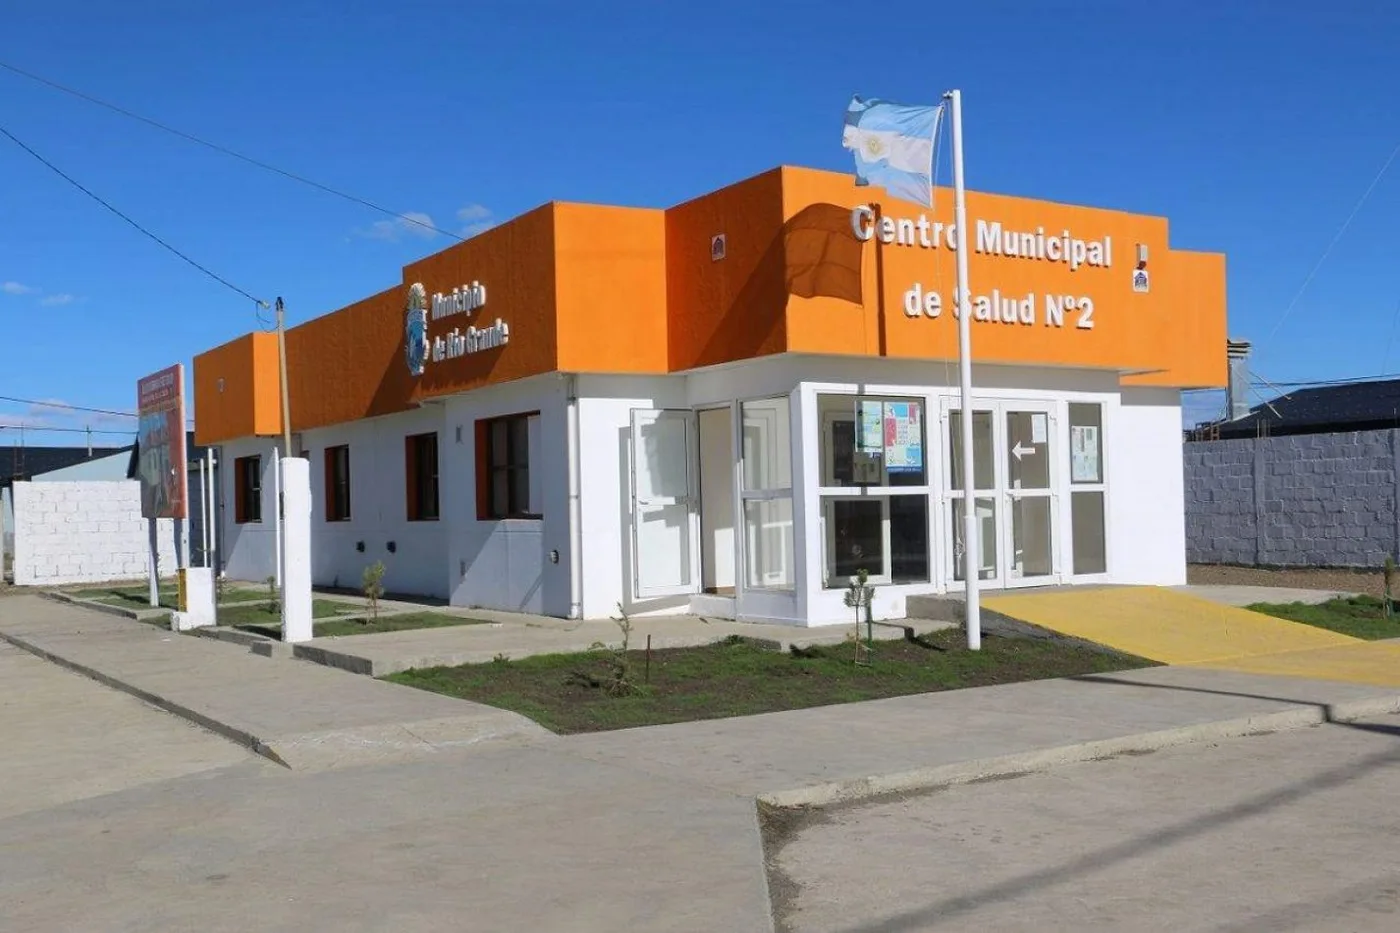 Centro de Salud Municipal N°2.